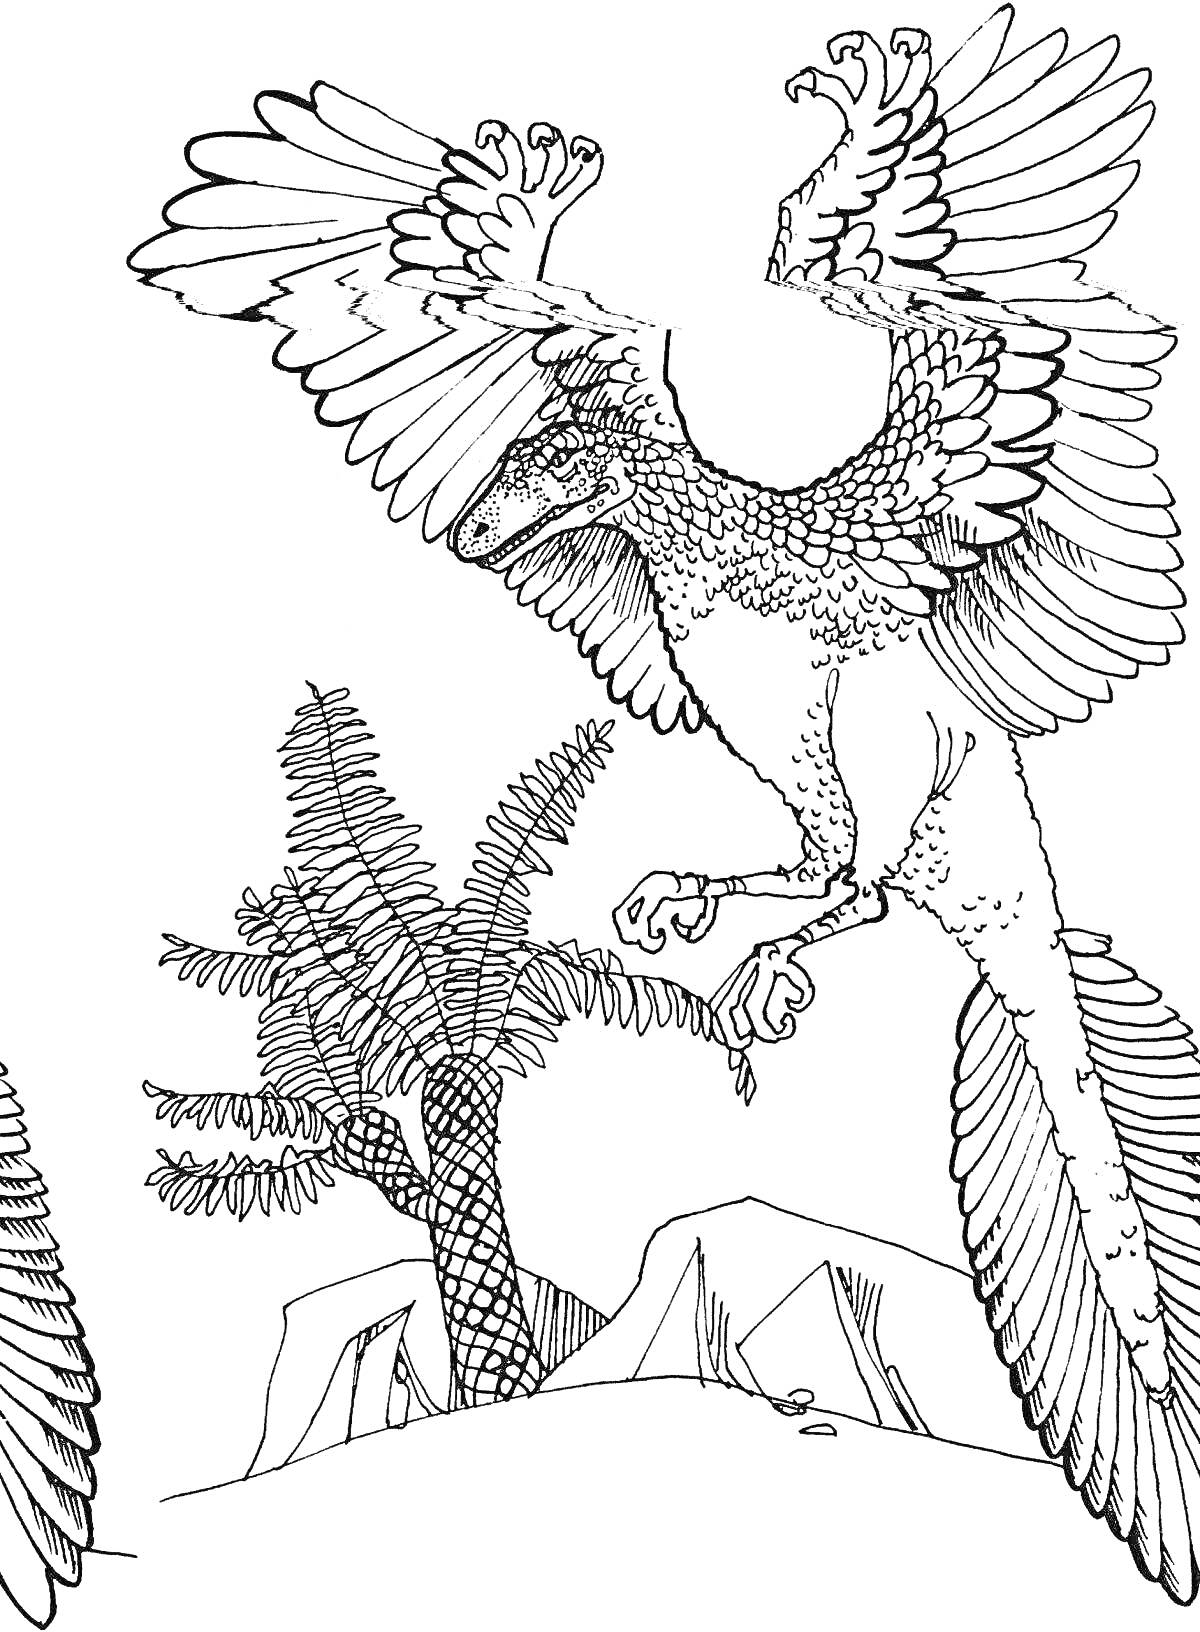 Летающий археоптерикс среди флоры доисторической эпохи